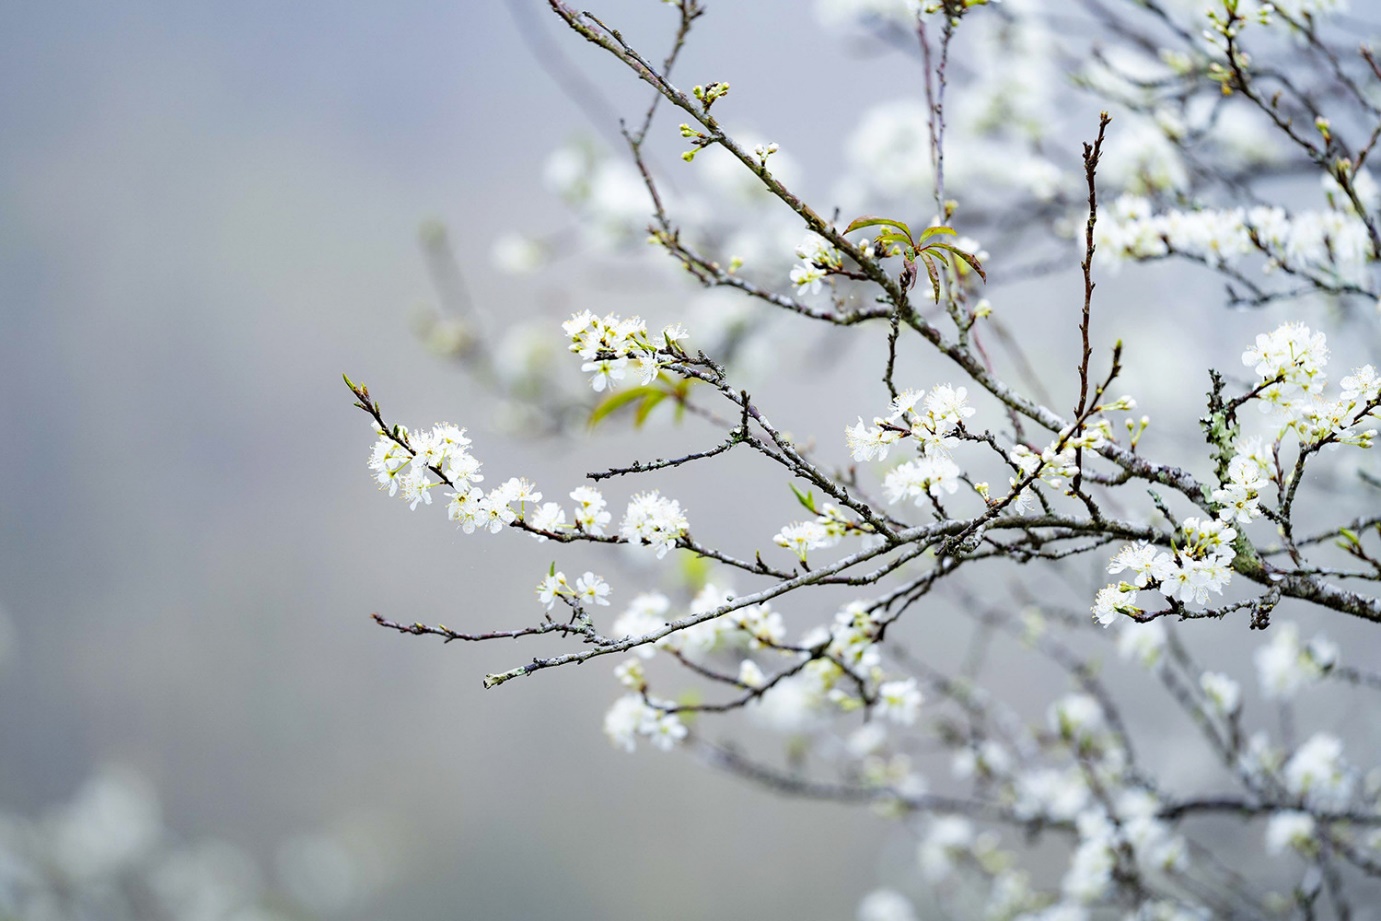 Mùa hoa mận nở trắng cổng trời Mường Lống, cảnh đẹp như 'tiểu Sa Pa ở Nghệ An' - 5